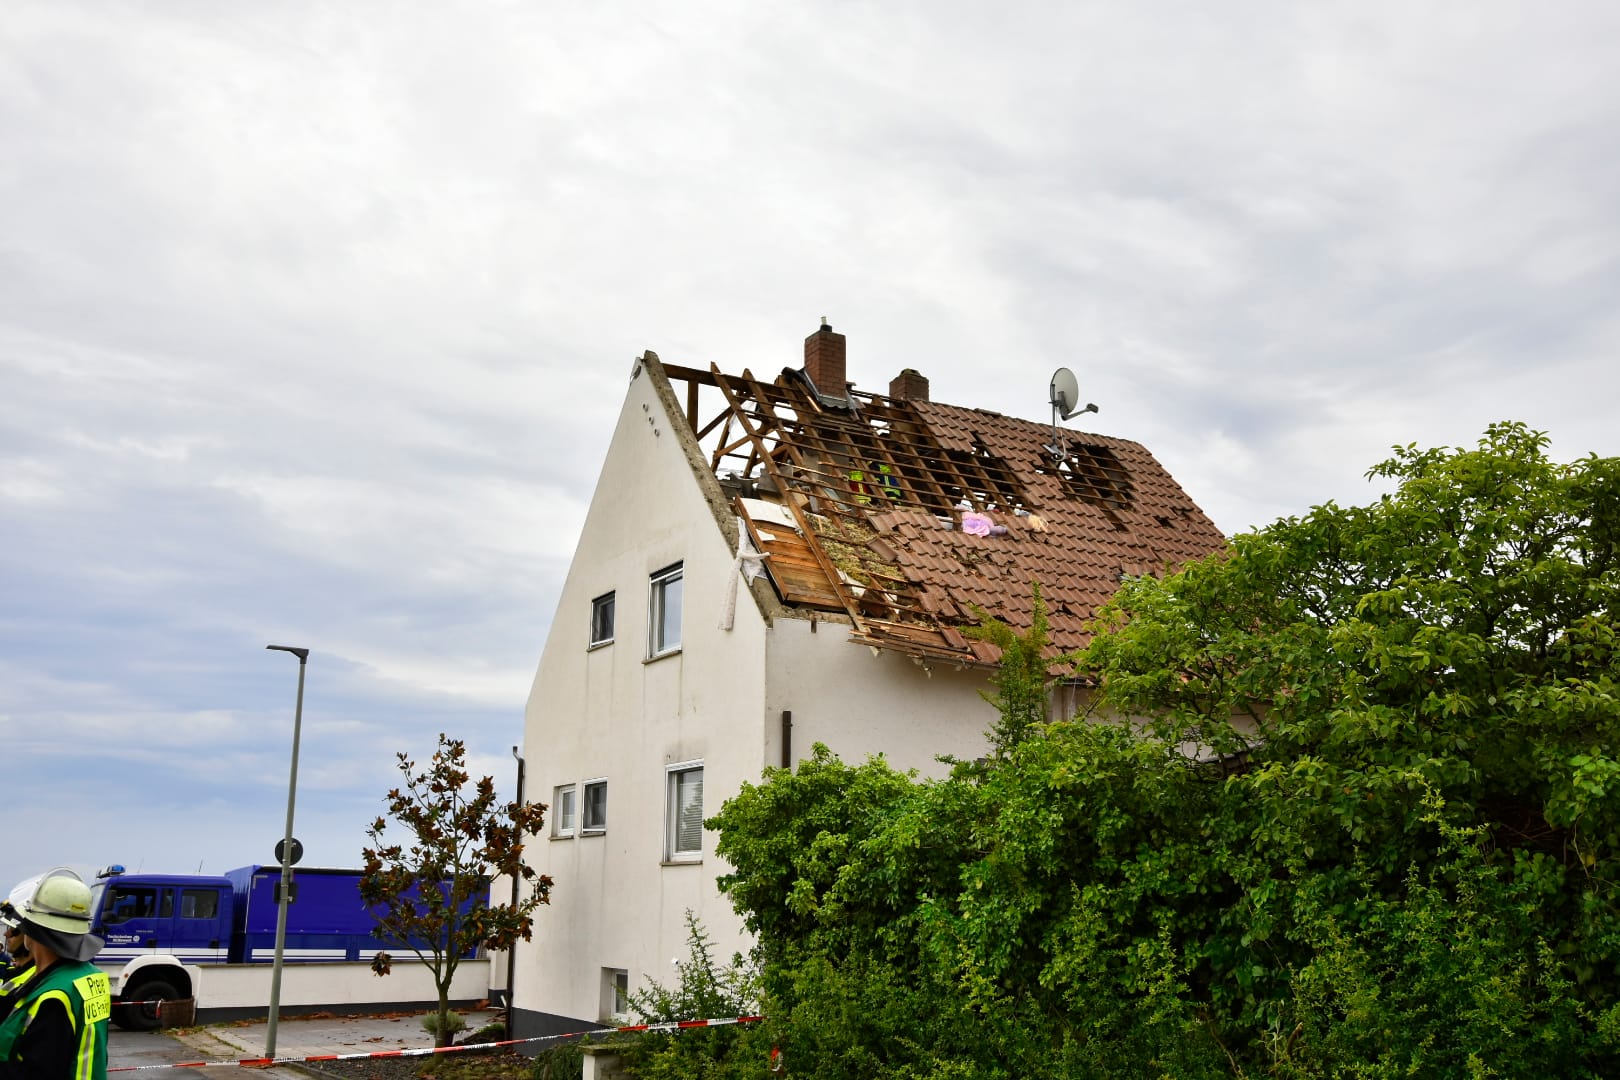 Tornado in Rheinland Pfalz?